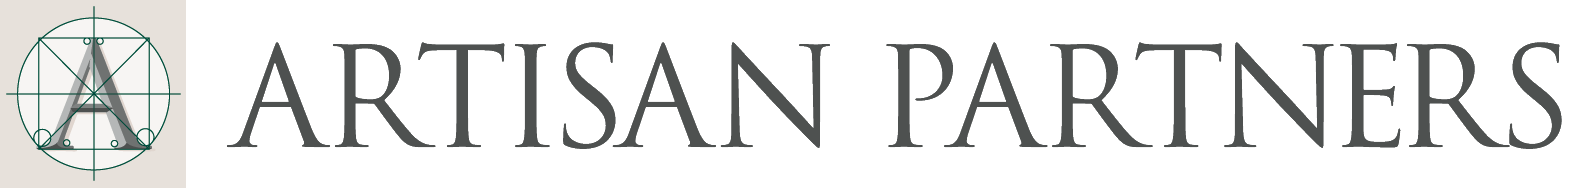 Artisan Partners logo large (transparent PNG)